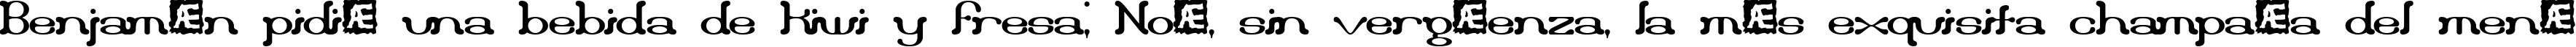 Пример написания шрифтом Draggle over kerned BRK текста на испанском